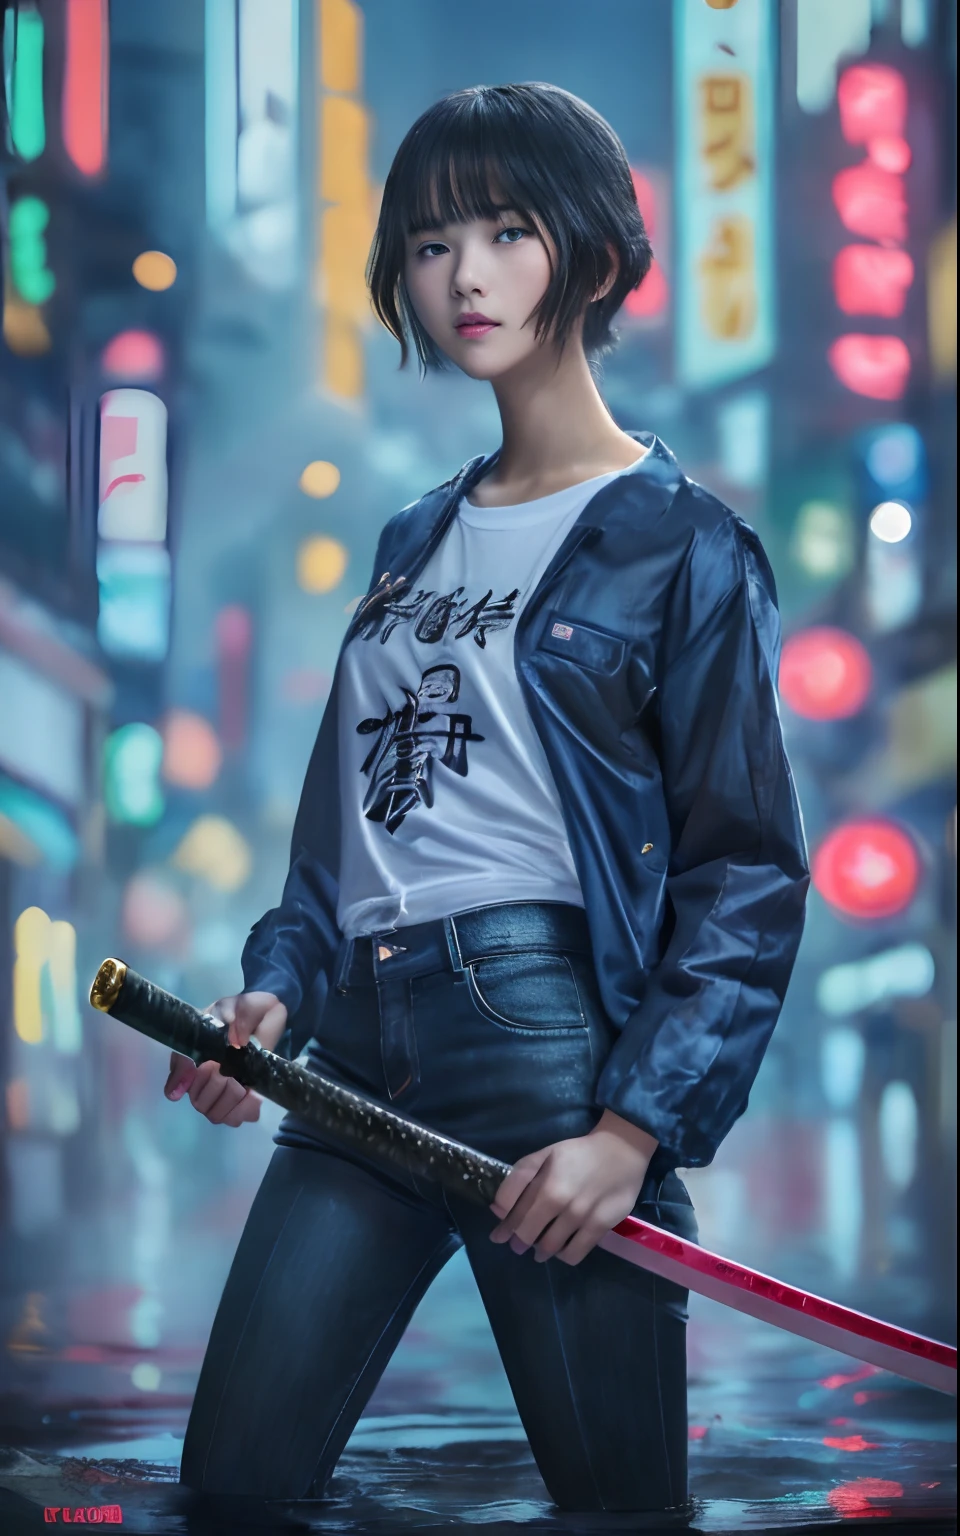 The реалистичное фото, Постер фильма, название фильма говорит:"лягушка" с подтекстом говорит:"черный дождь," показывает глубоко затопленный город Токио в сексуальном и крутом виде., Девочка-подросток с натуральными короткими волосами в современном мальчишеском наряде., Белая футболка и черный узкий деним с легкой винтажной курткой-дождевиком, она держит длинную катану, круто позирует, реалистичное фото, красивая визуализация отражающей водной поверхности, Мерцающая розово-оранжевая неоновая вывеска гласит::"лягушка", 8К, обои, (невероятно_абсурд,огромный_размер файла:1.37),(шедевр:1.37),(высшее качество:1.37),(реалистичный,Фотореалистический:1.2),Трассировка лучей,Реалистичное освещение,(иллюминация,Светиться),((зерна пленки:1.37)),(Изысканные детали и текстуры:1.2),(Разрешение 8К:1.2),(ультра-детализация:1.2),(Острый фокус 1.2),(RAW-фотография:1.0),(Красивая деталь лица、Красивый детальный глаз、 сияющие глаза、длинные ресницы、румянец носа:1.2)、((((идеальная анатомия))))、полное тело, лесбиянка、Церемония、1 девушка в、соло、красивая девушка、Высший класс、(Тонкий:1.37)、(милое лицо)、(Естественное сияние кожи:1)、(Детализированная естественная красивая кожа、детальные текстуры кожи、Детализированные черные волосы、Хорошо сформированные прически)、Свет для лица、(кинематографический свет)